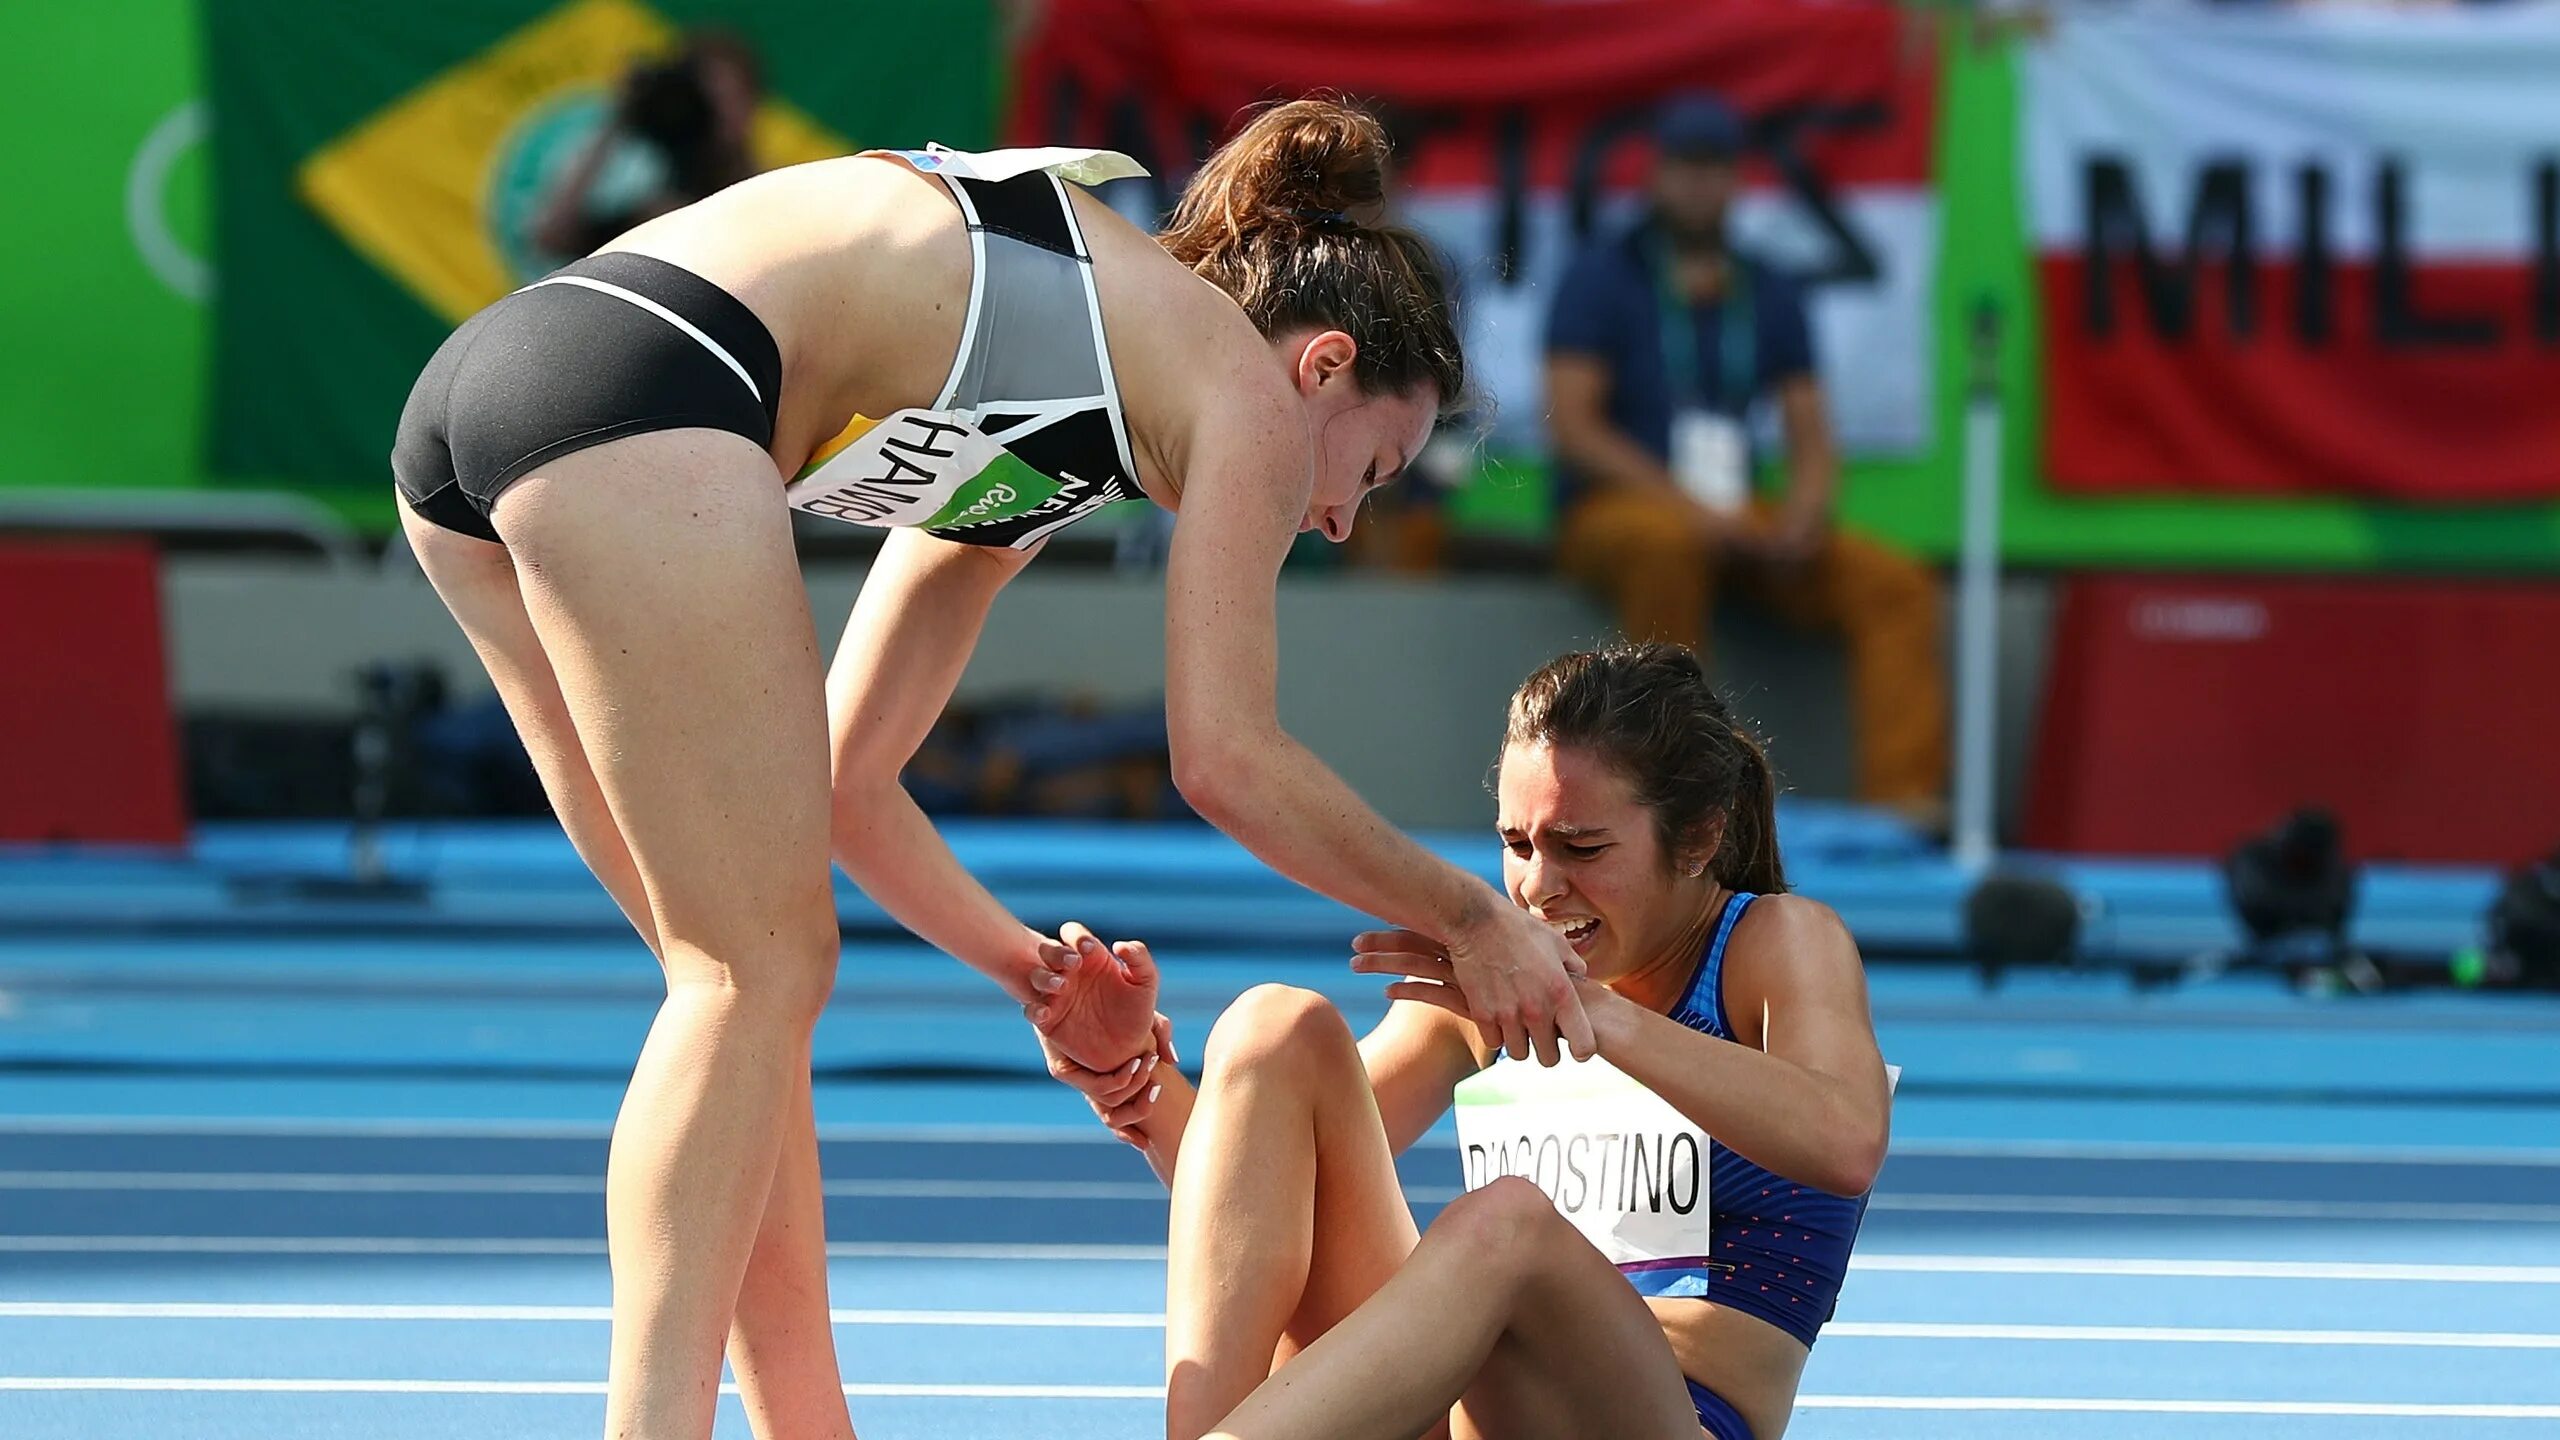 Спортсмены помогают друг другу. Бегунья на финише. Самые трогательные моменты в спорте. Легкая атлетика женщины фото. Sports reports